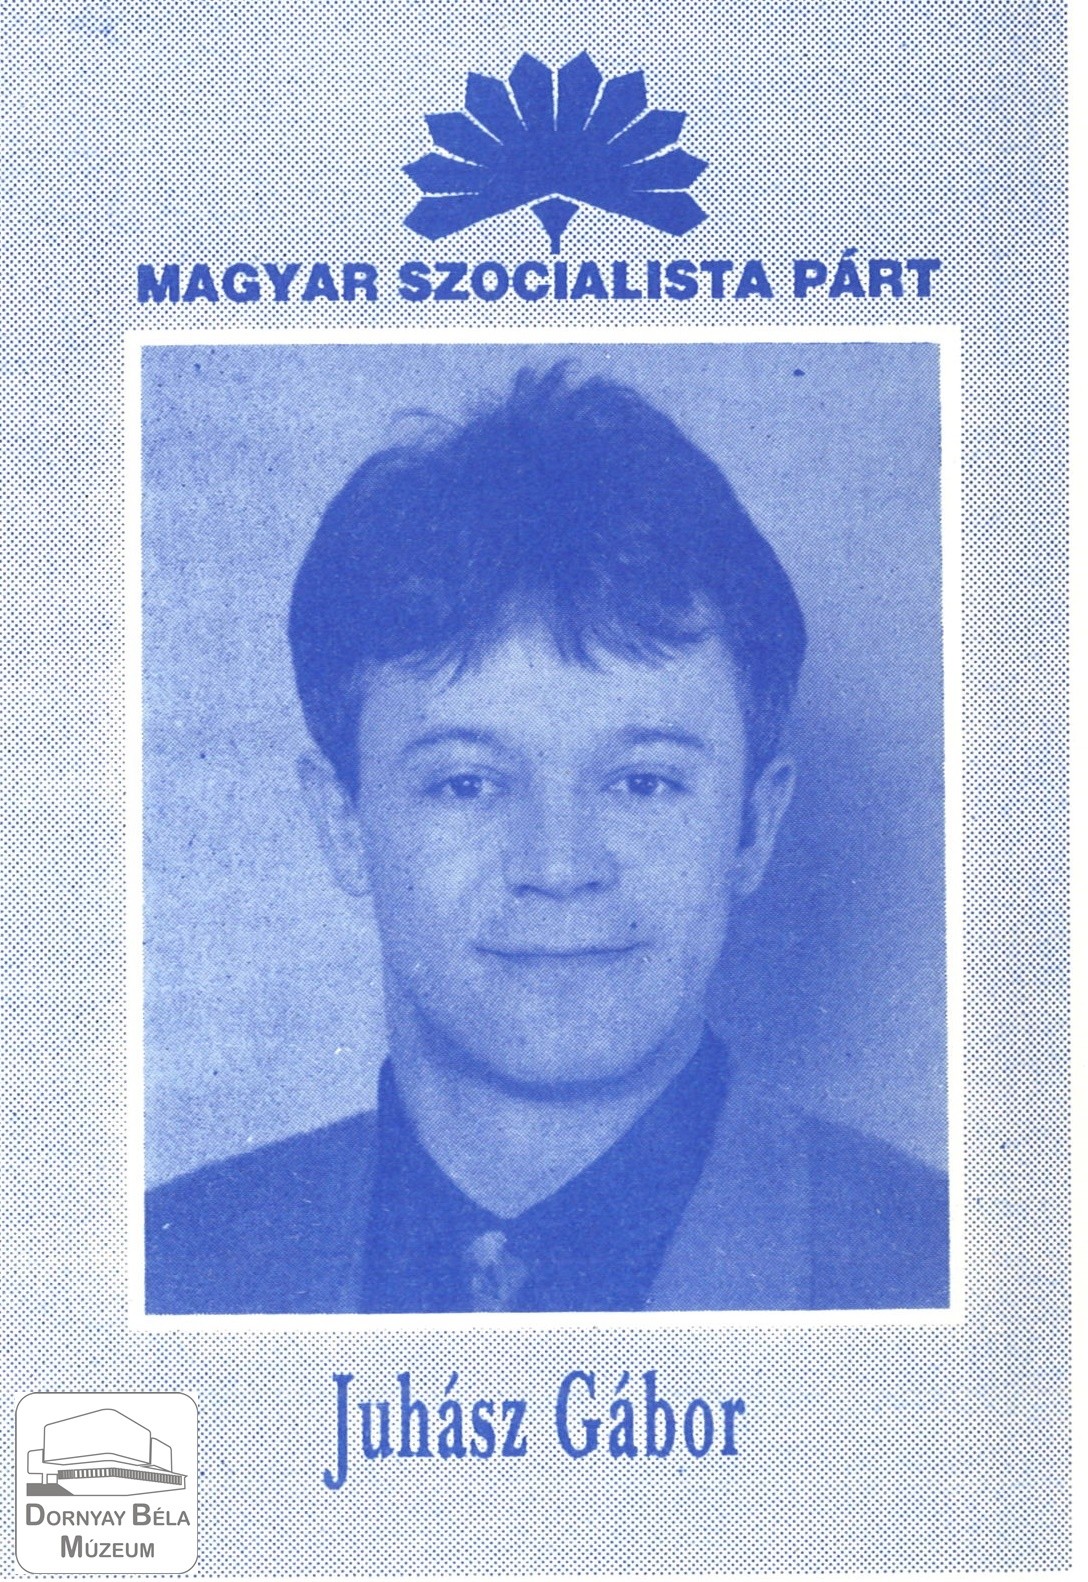 Juhász Gábor – az MSZP képviselőjelöltje a 2.sz. Választókerületben (Dornyay Béla Múzeum, Salgótarján CC BY-NC-SA)